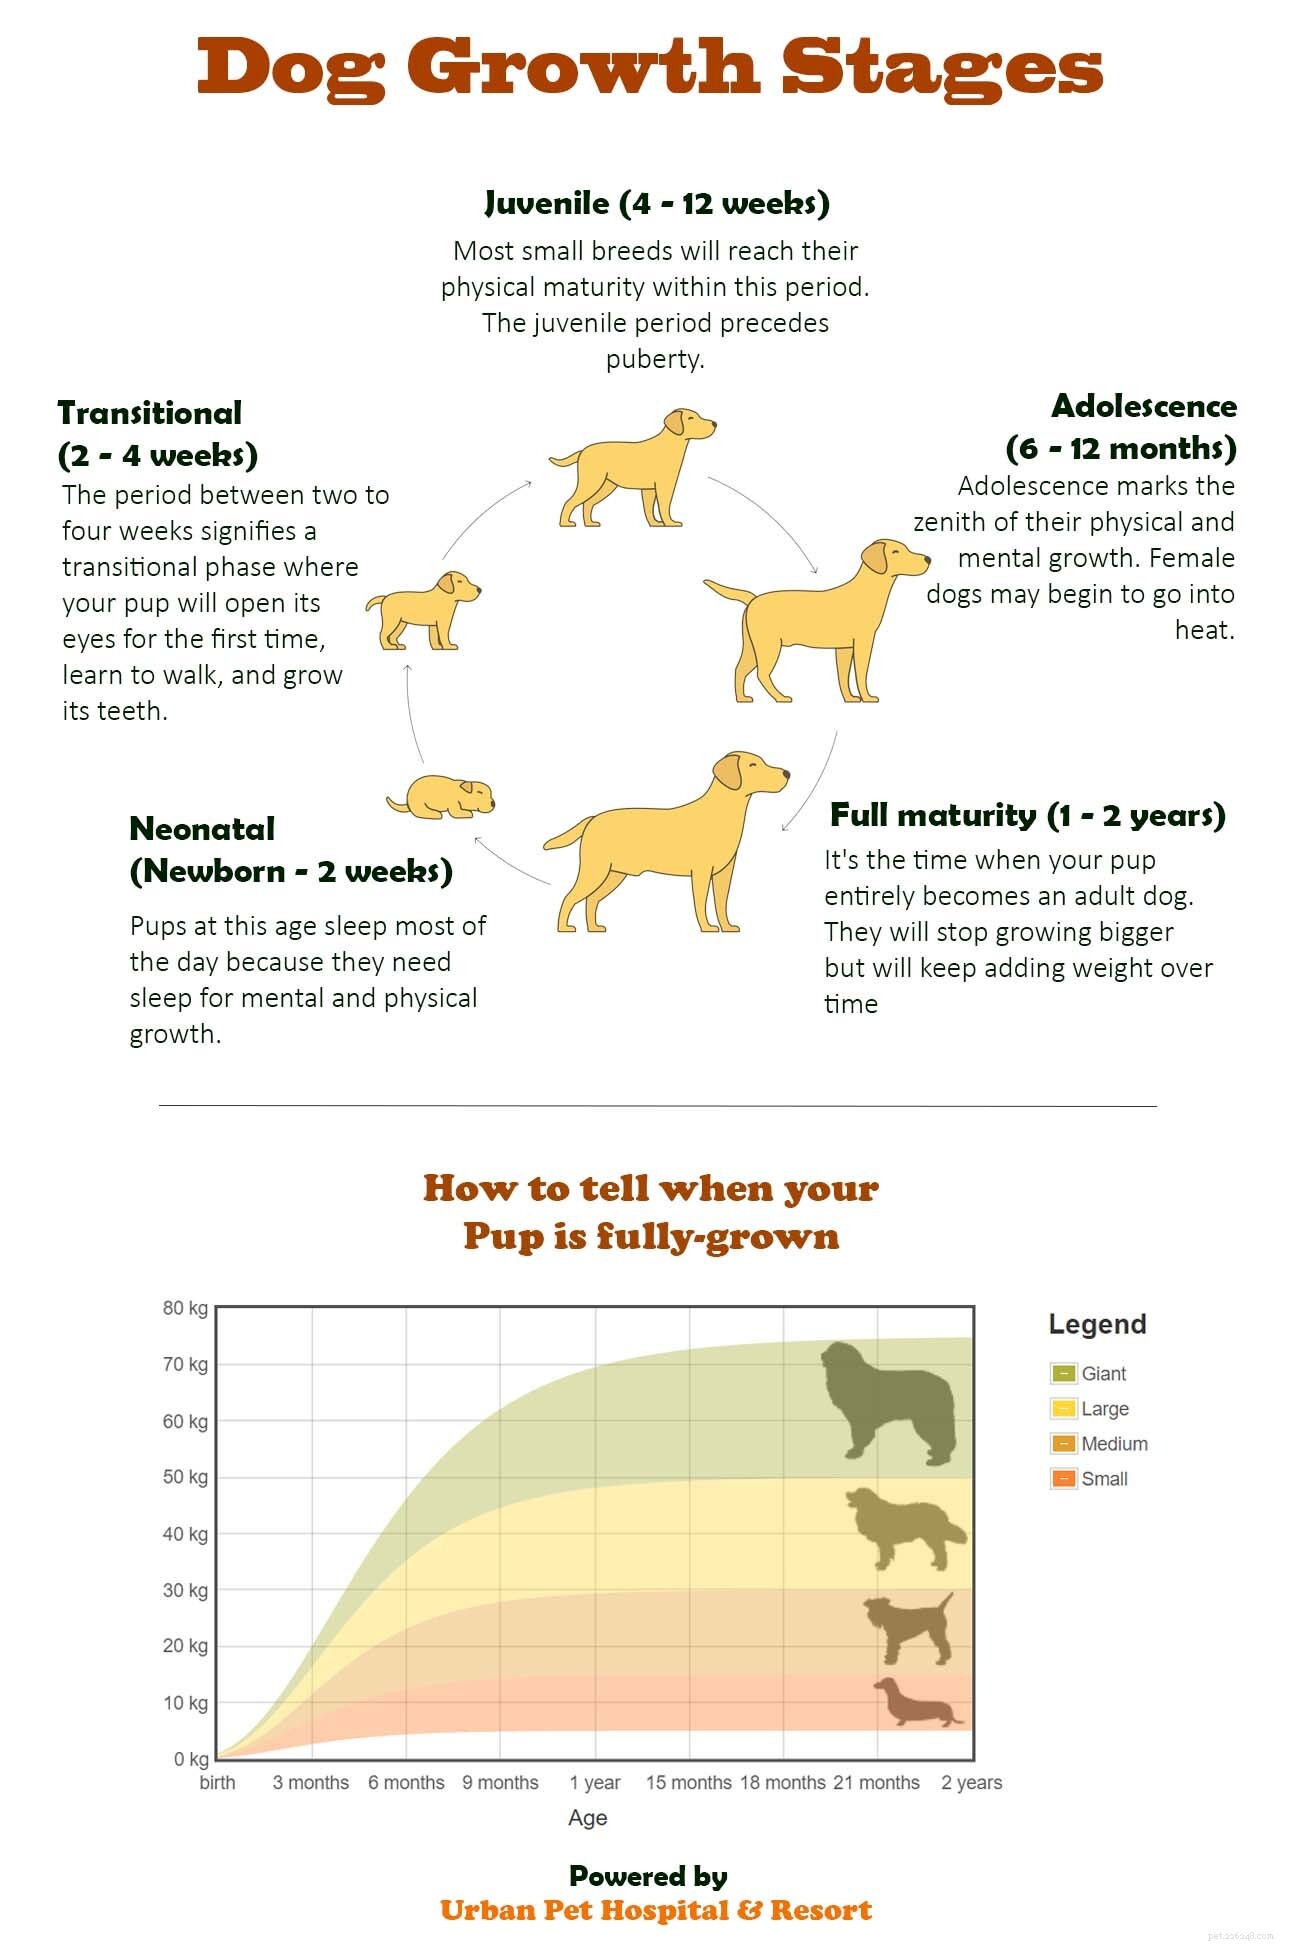 Vid vilken ålder slutar hundar växa?